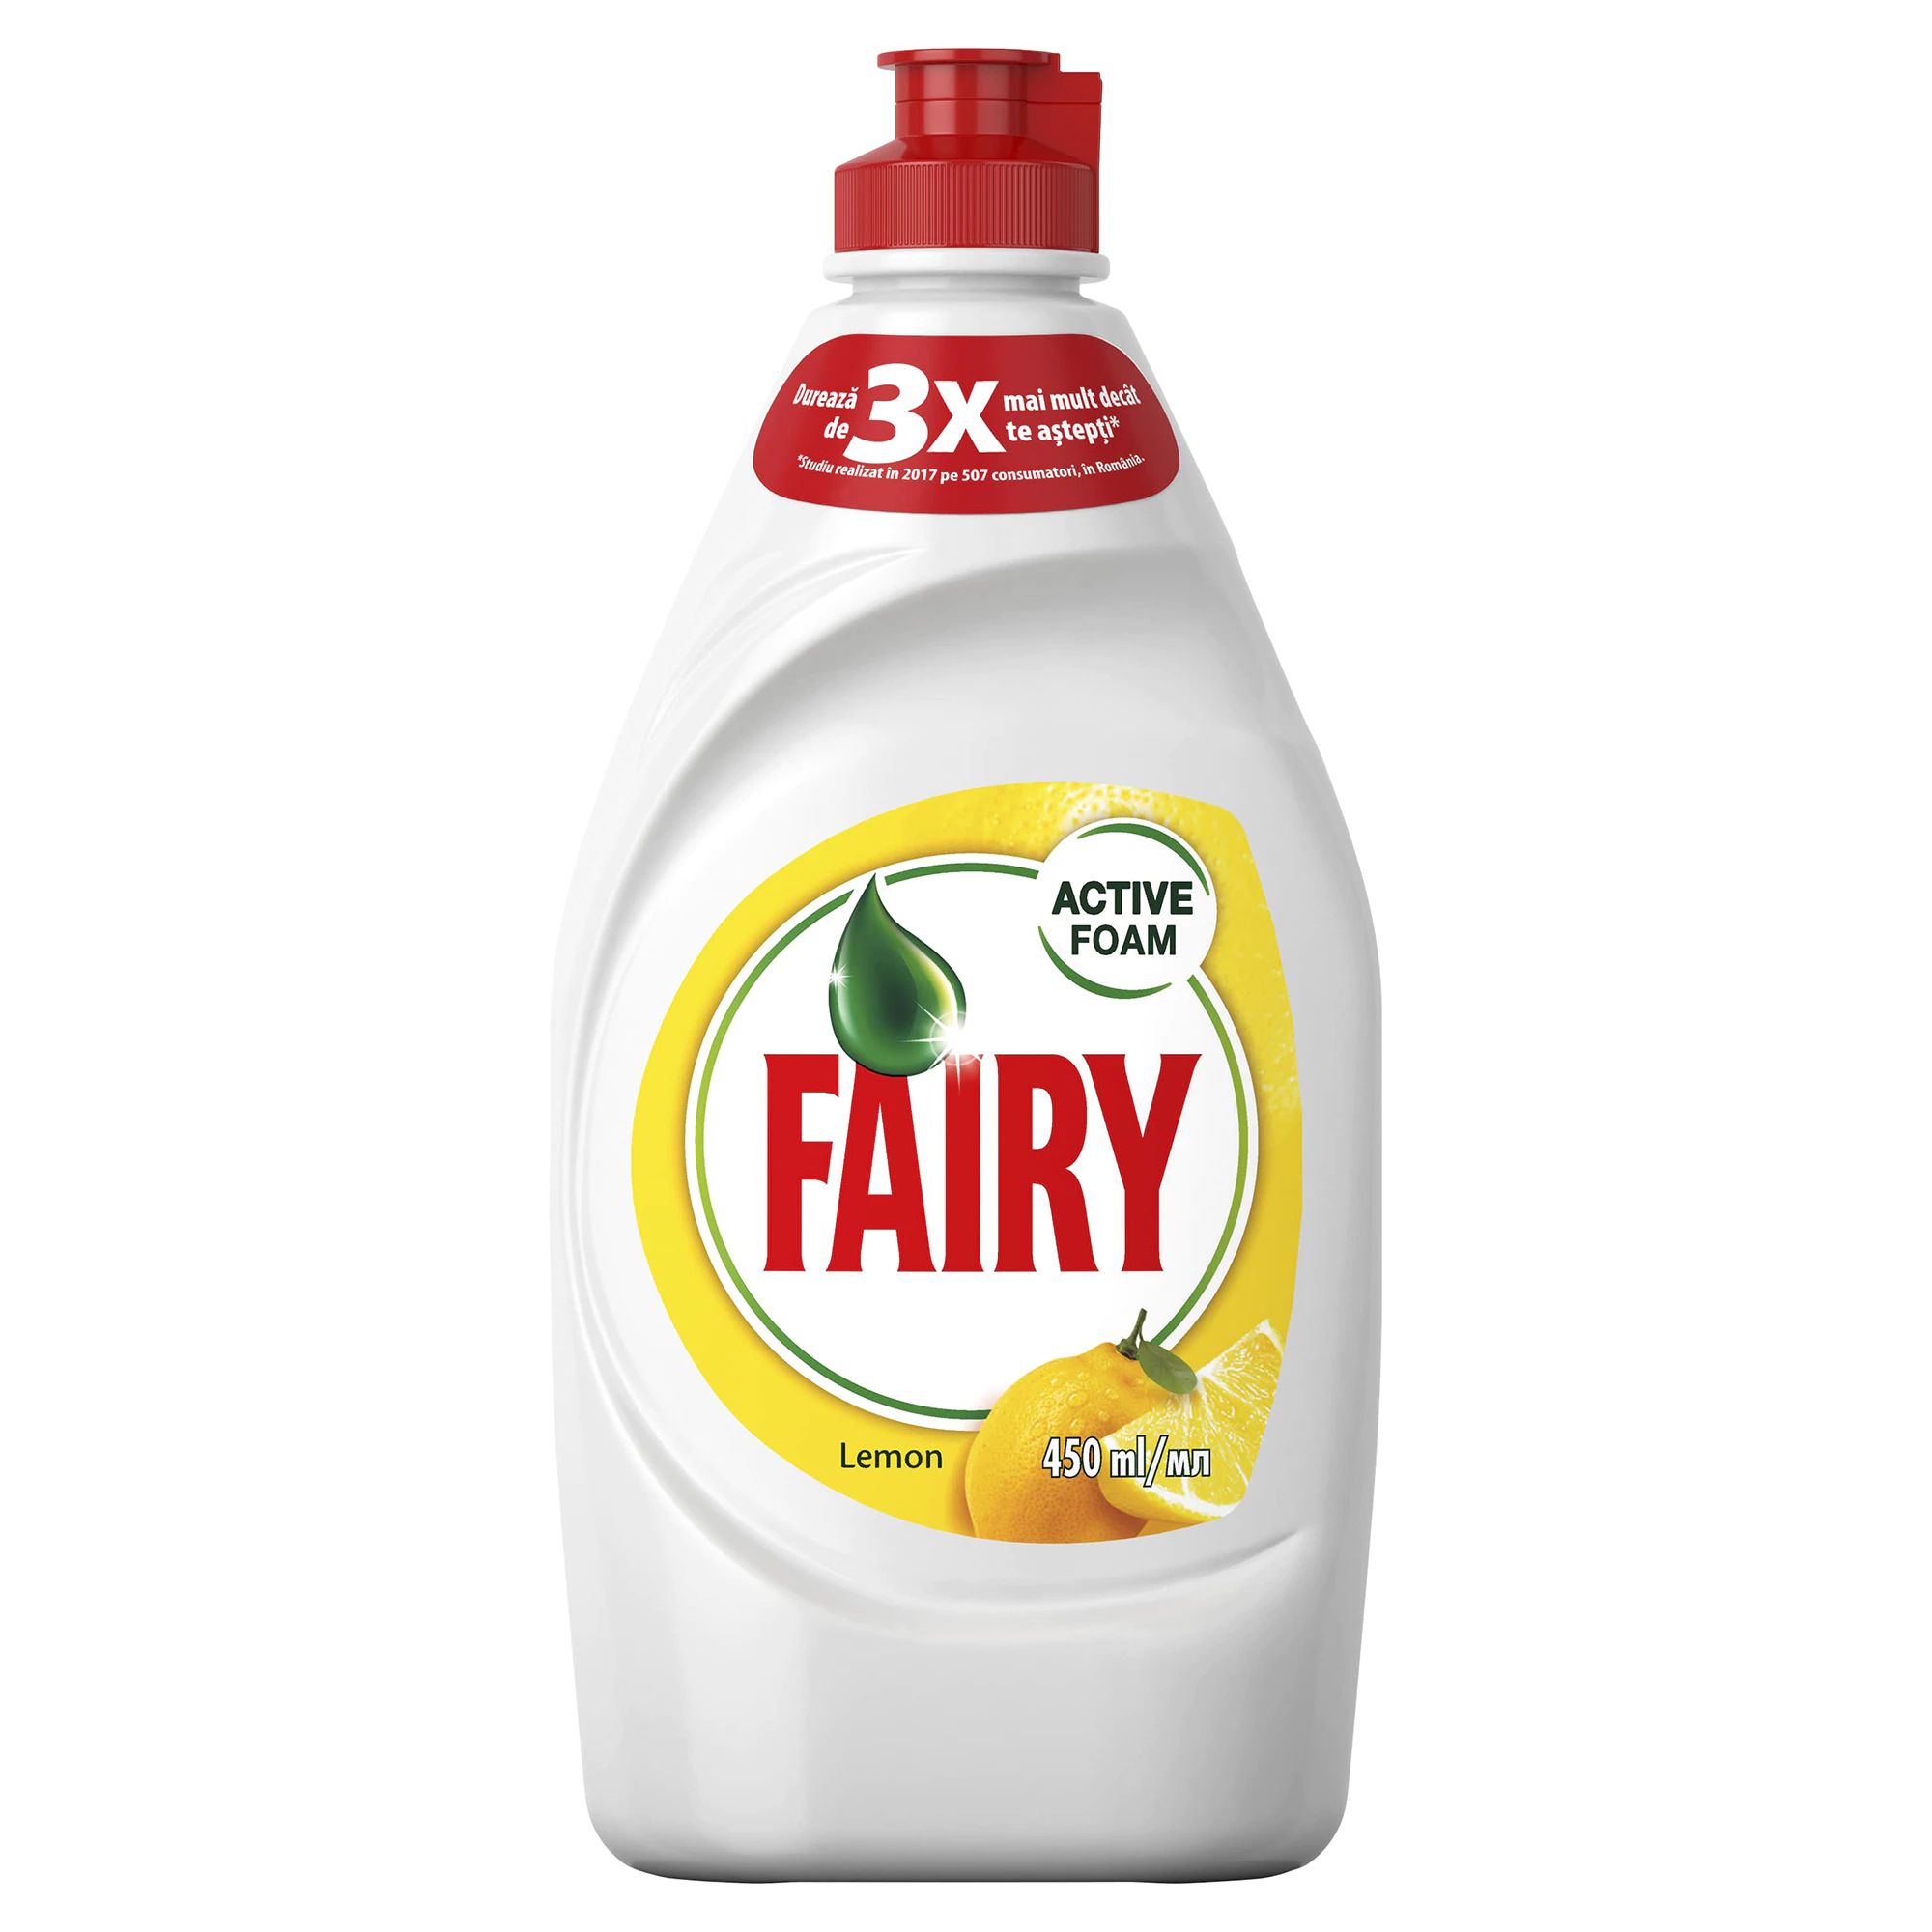 Fairy lemon 450ml